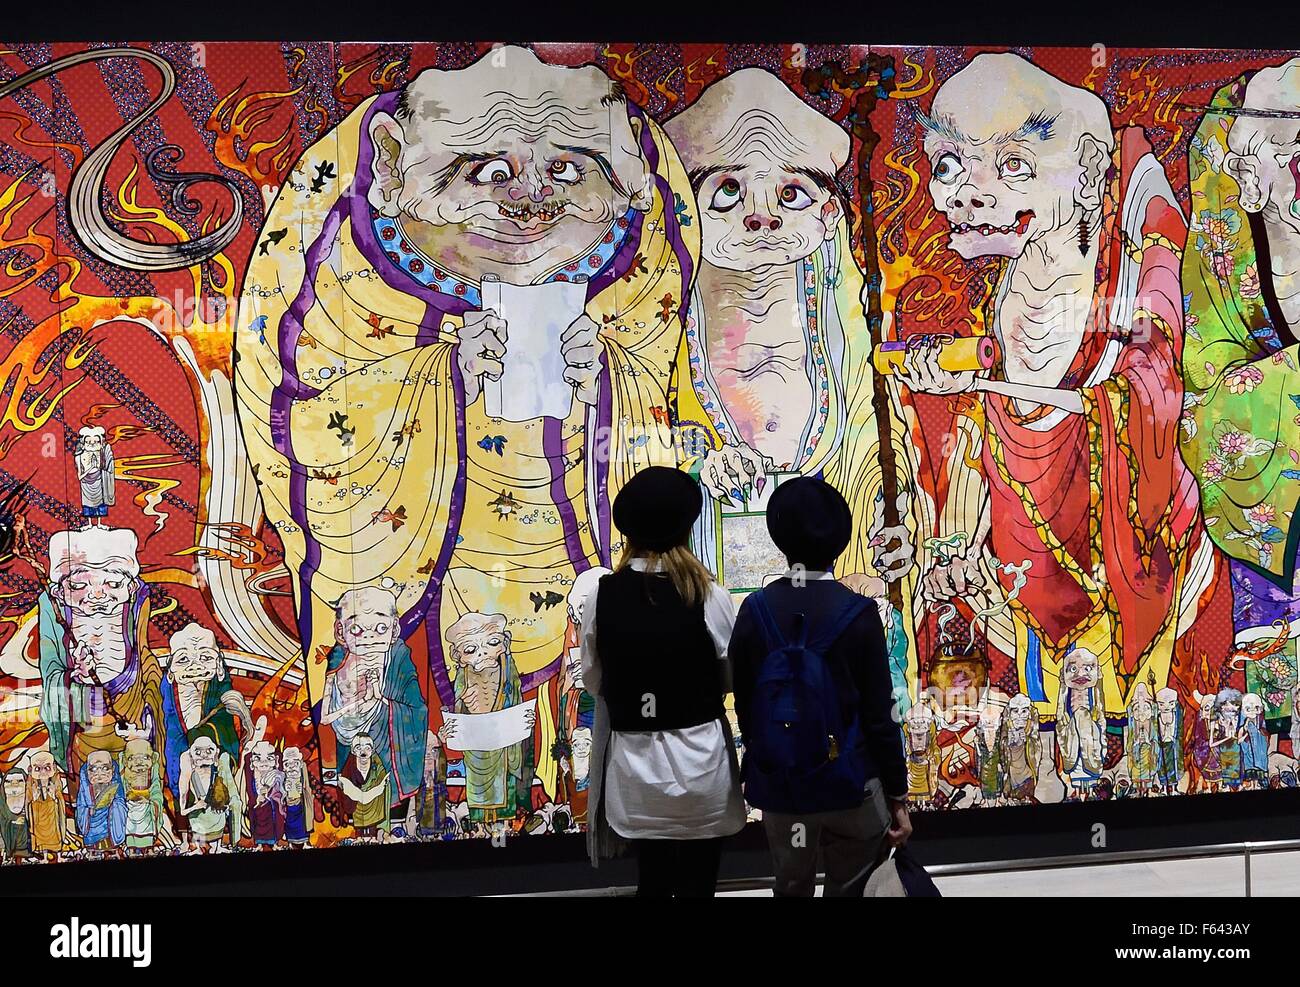 11 Nov, 2015 - Tokio, Japón - los coleccionistas de arte fotografía la  cautivante obra de arte japonesa del internacionalmente aclamado artista  contemporáneo Takashi Murakami en la exposición titulada Takashi Murakami:  Los